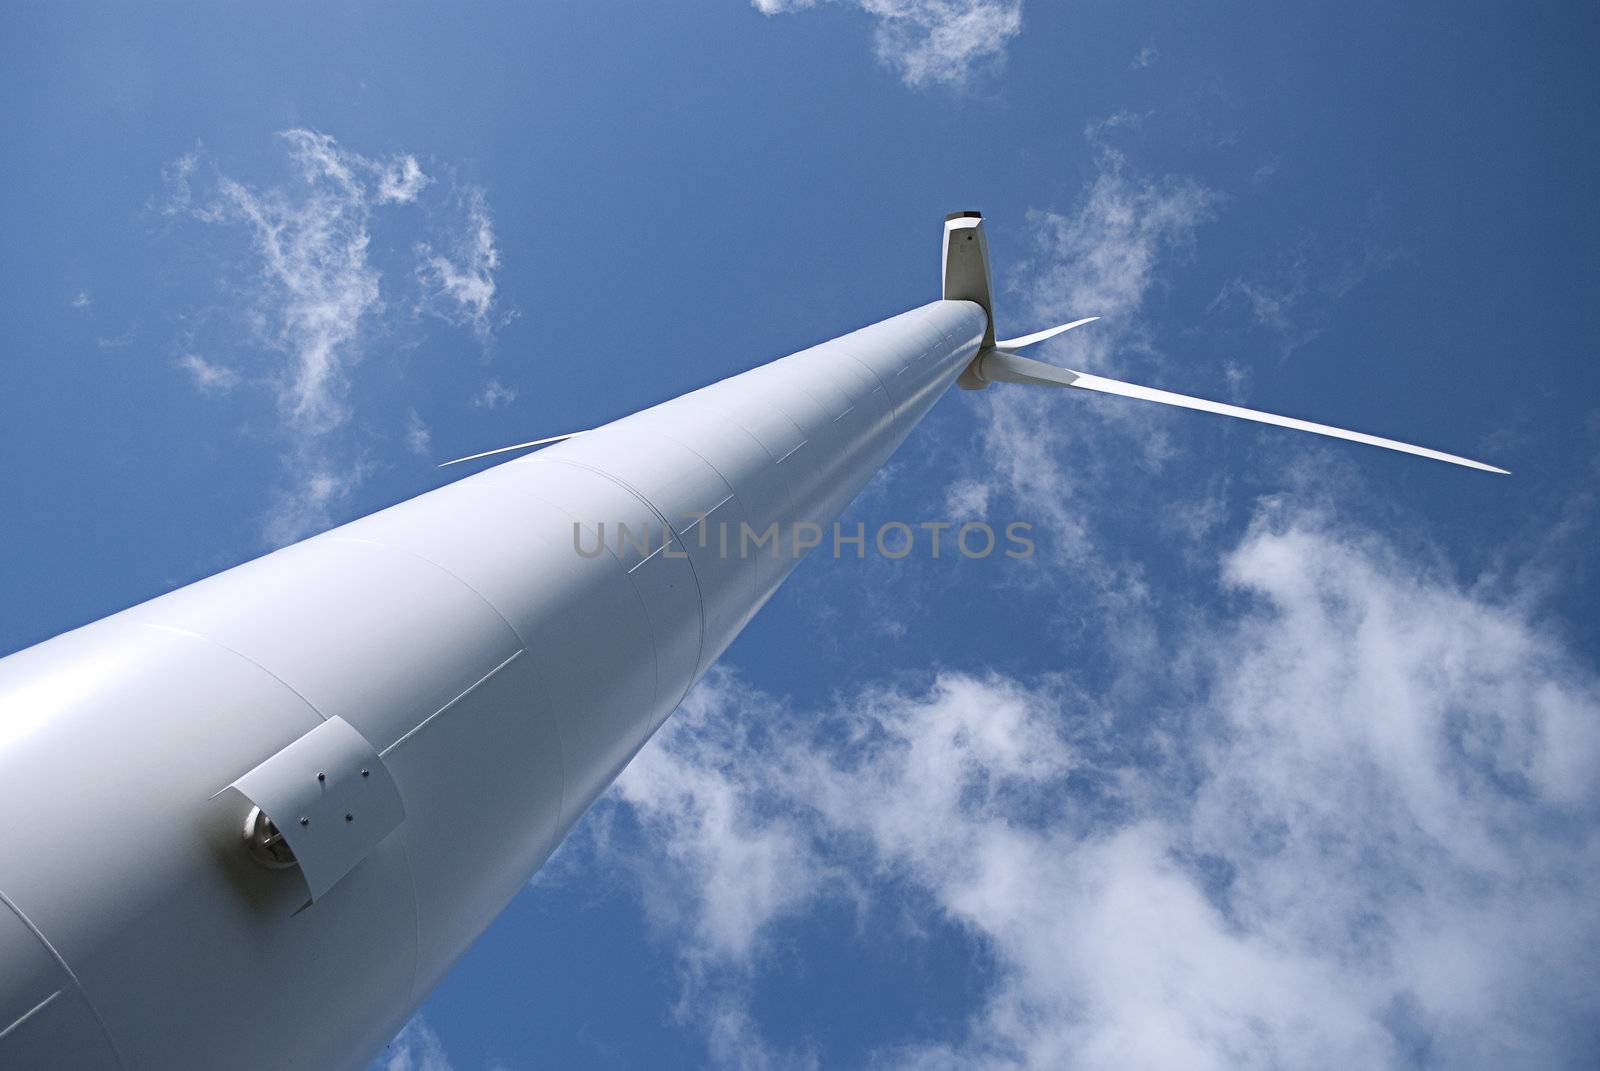 wind turbine 2 by zebra31